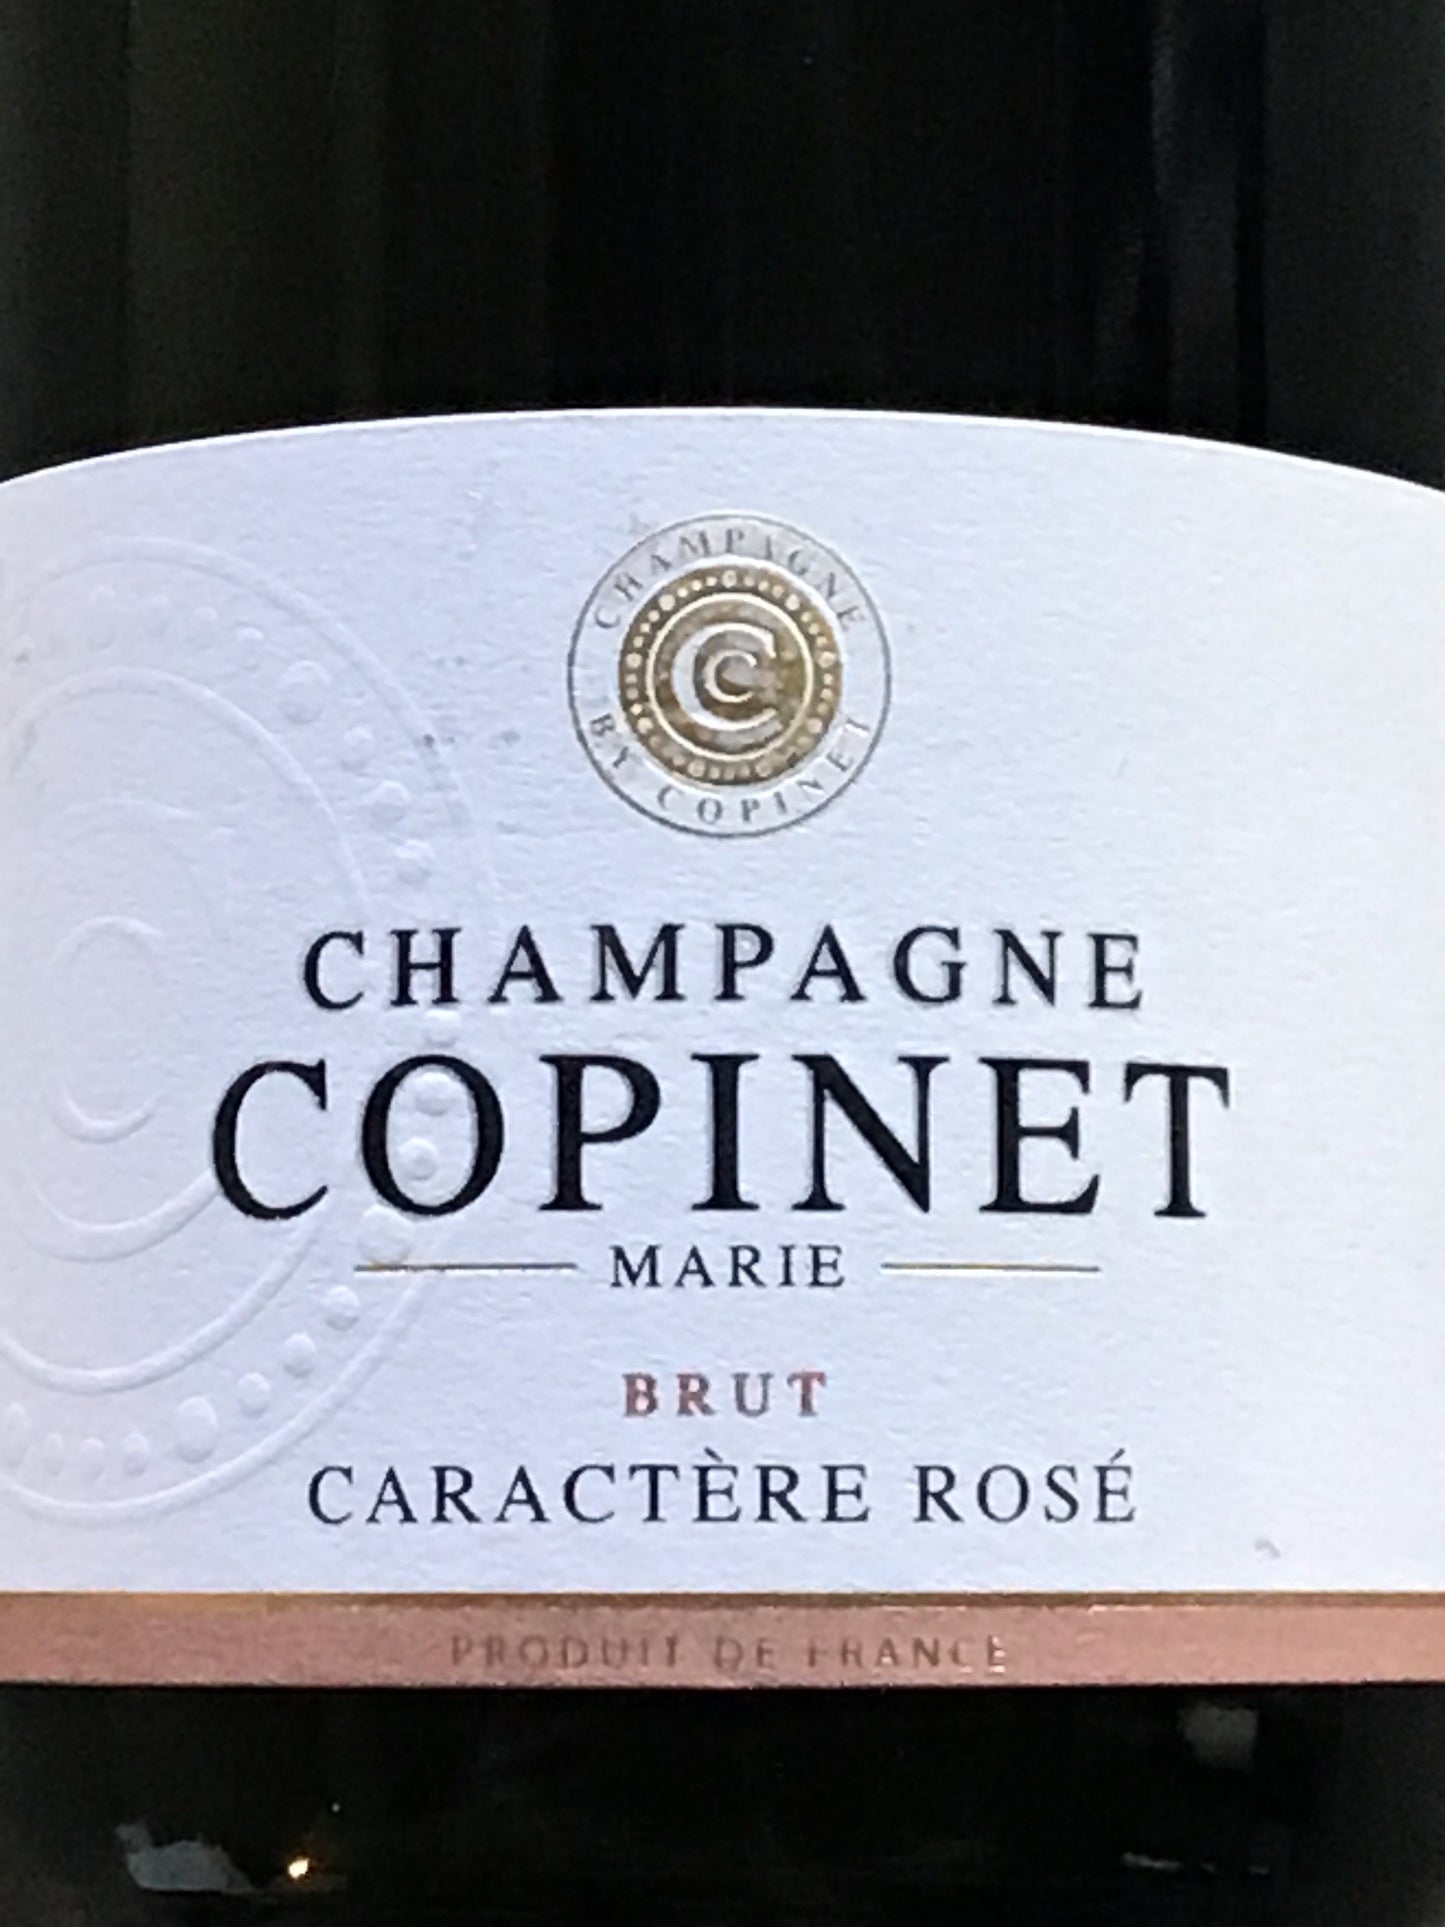 Marie Copinet 'Caractère' - Champagne Brut Rosé - 375ml